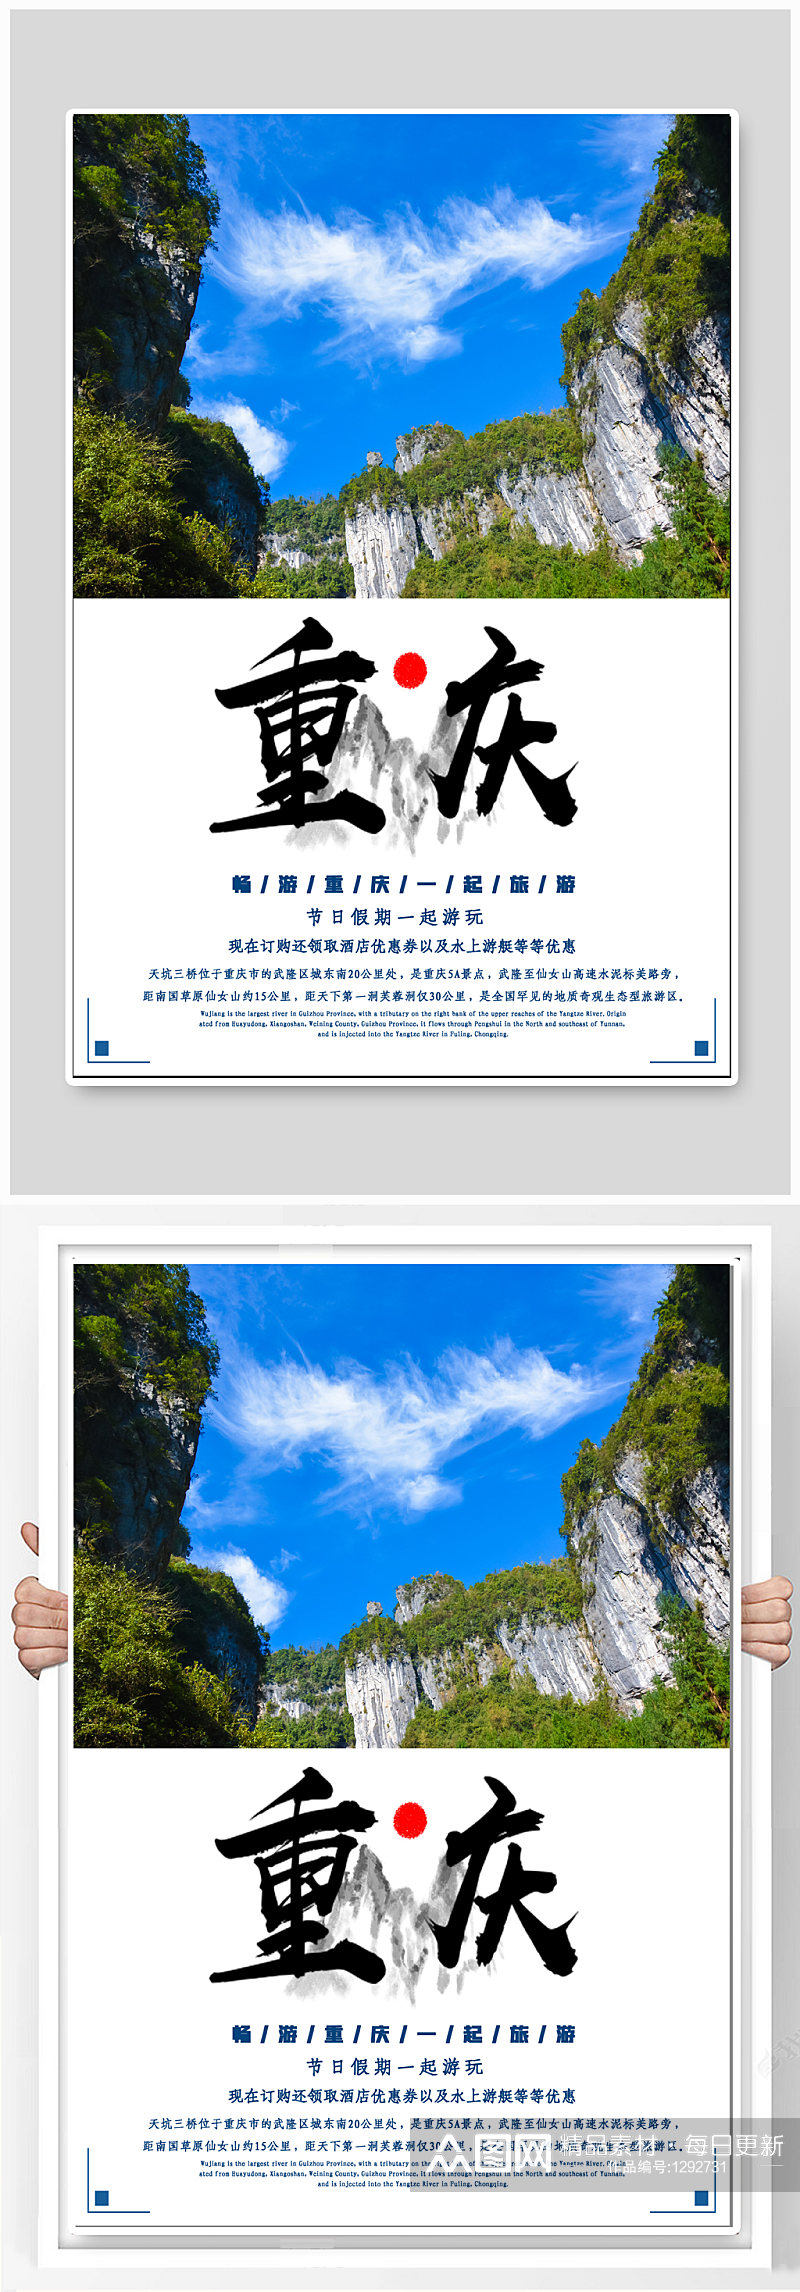 重庆旅游宣传海报素材